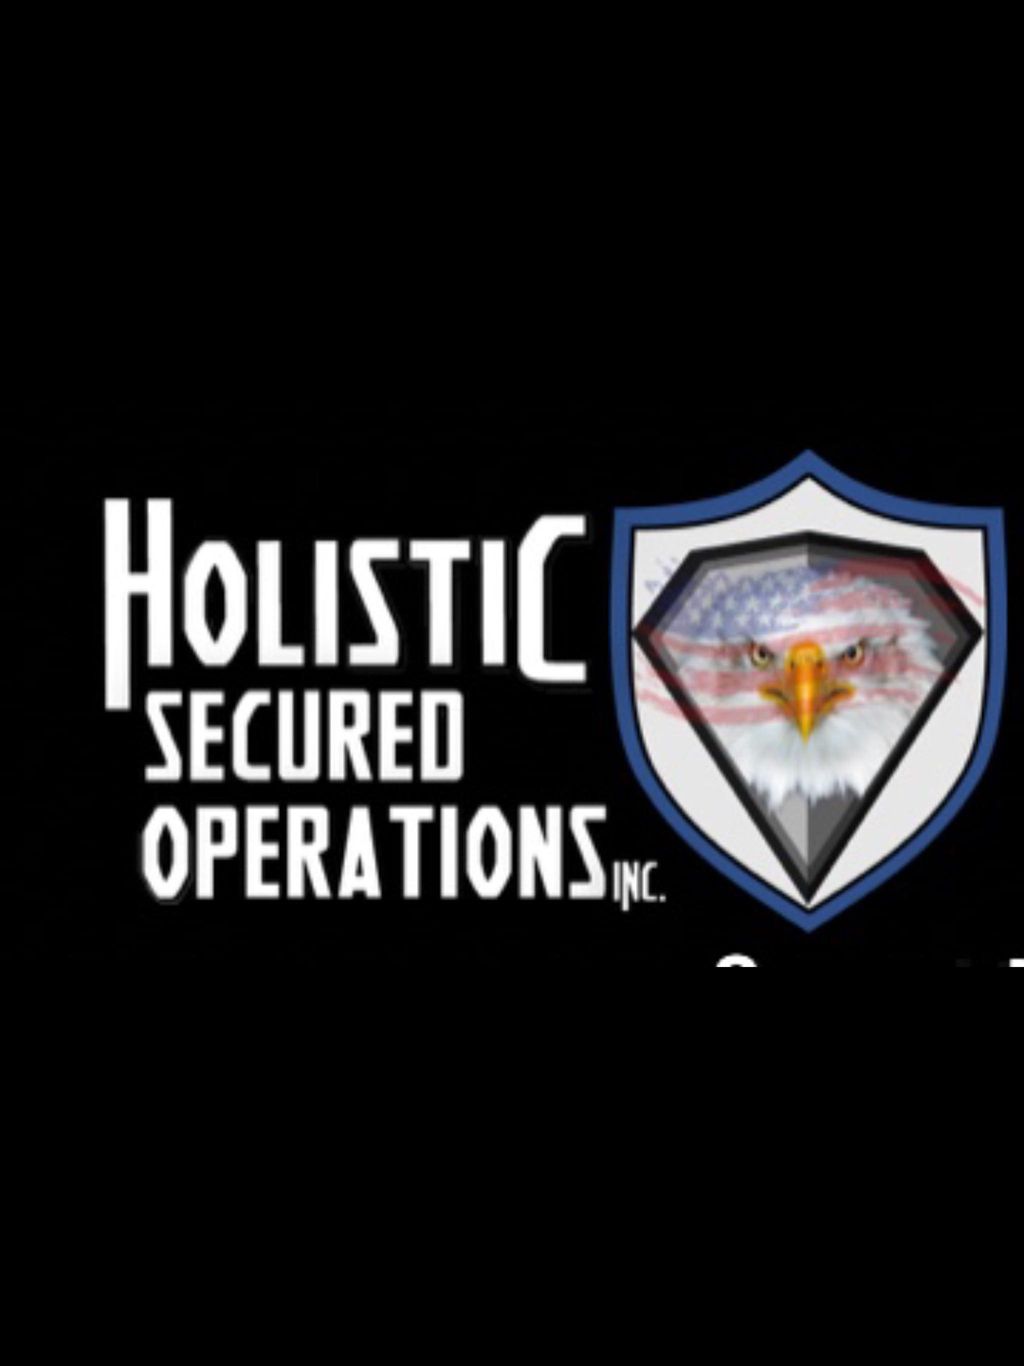 Holistic Secured Operations, Inc.